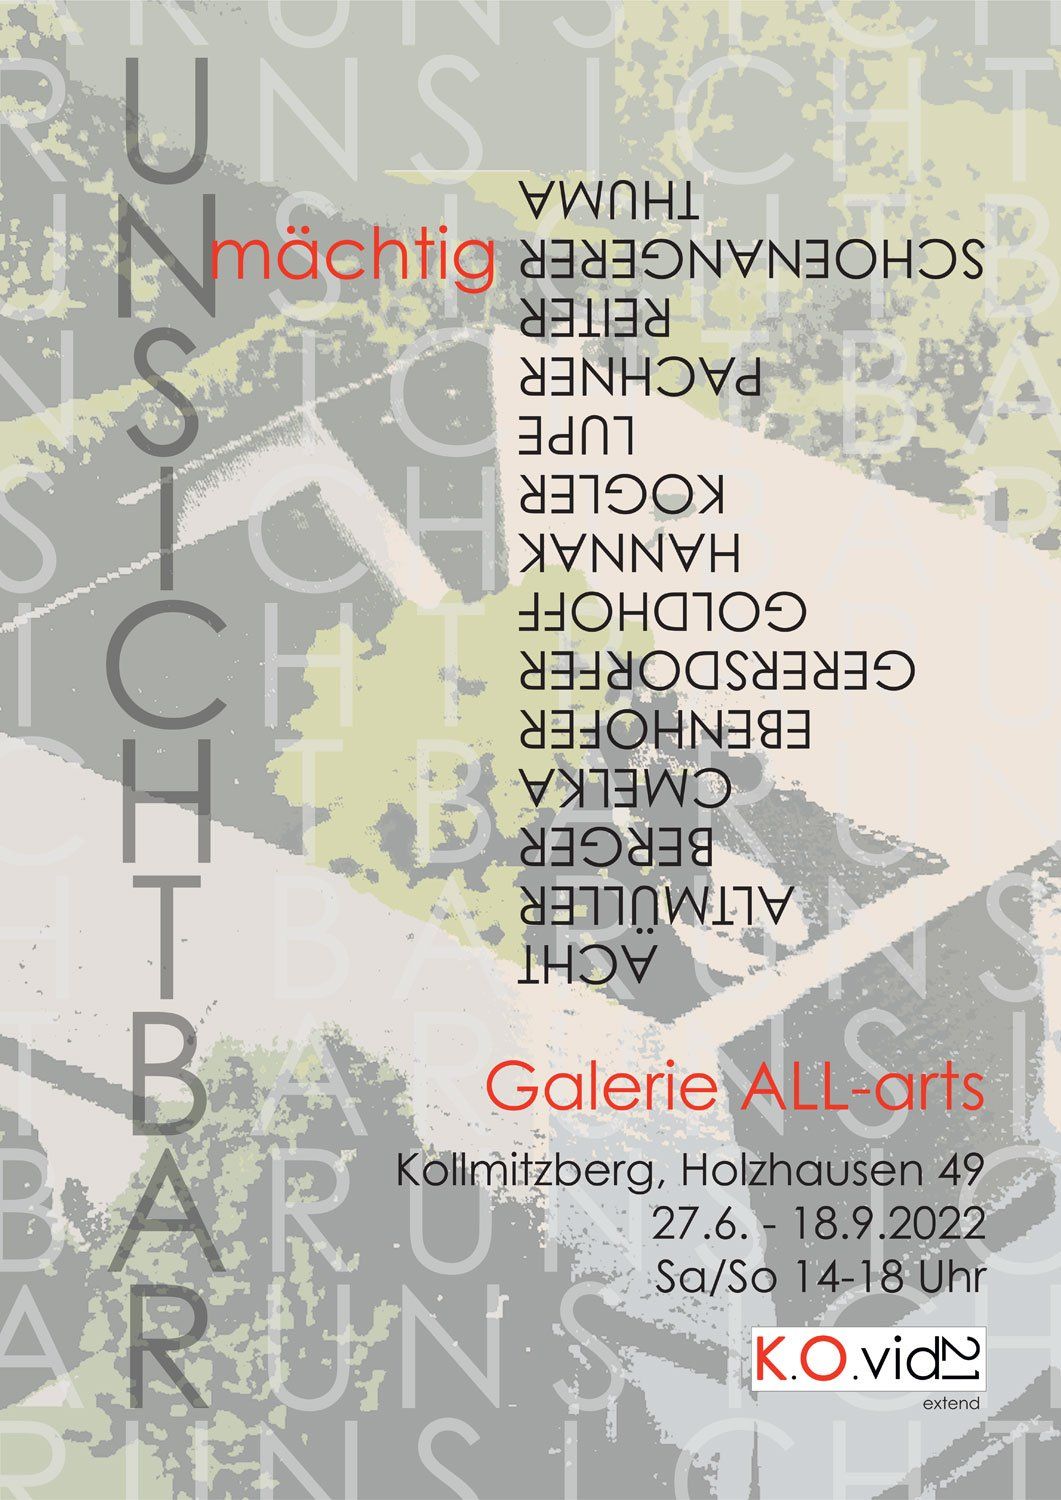 K.O.vid21 Galerie ALL-arts Kollmitzberg